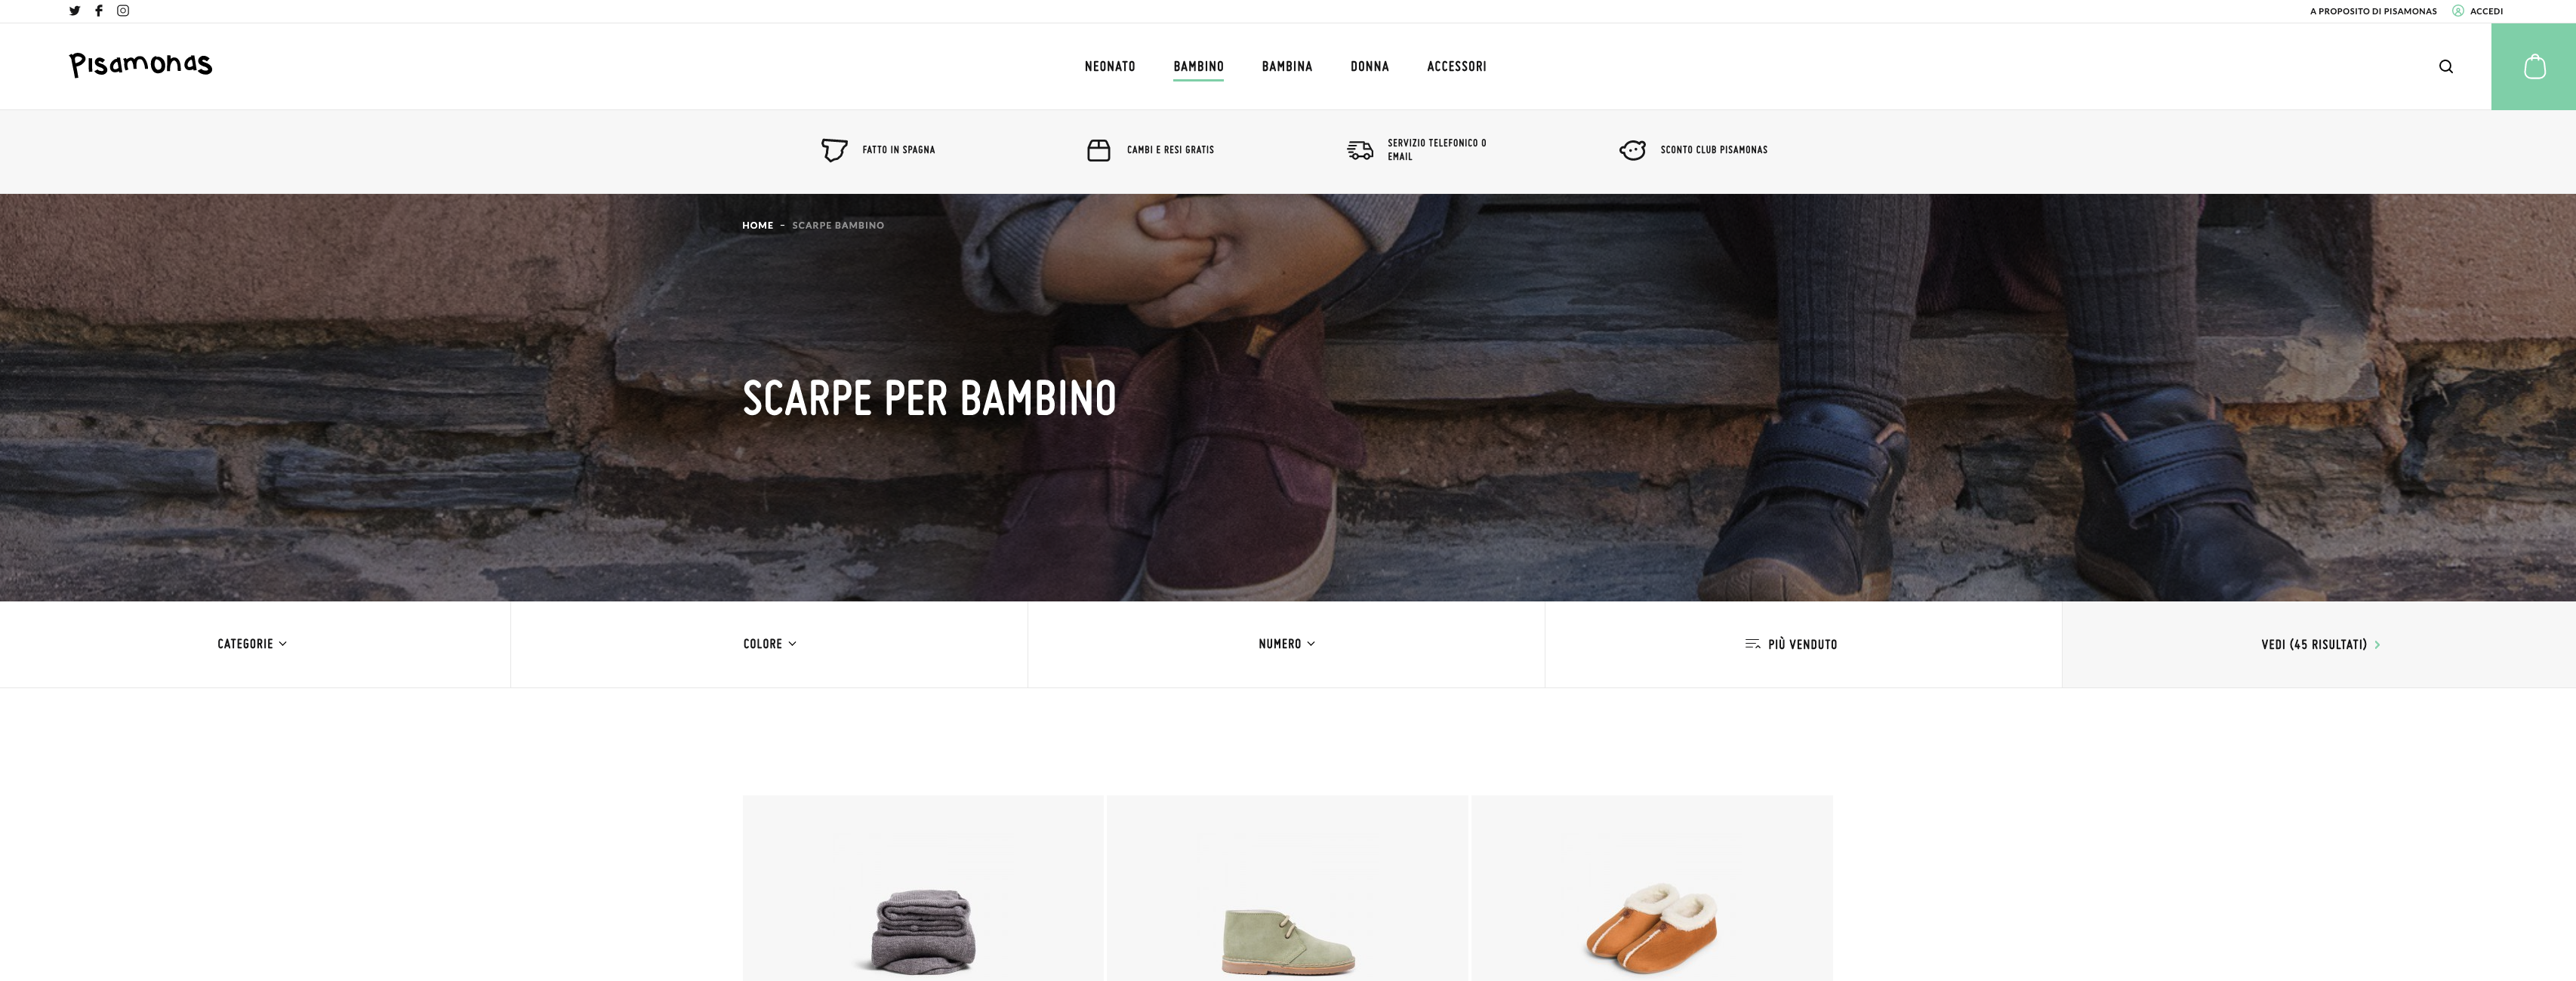 siti online di scarpe